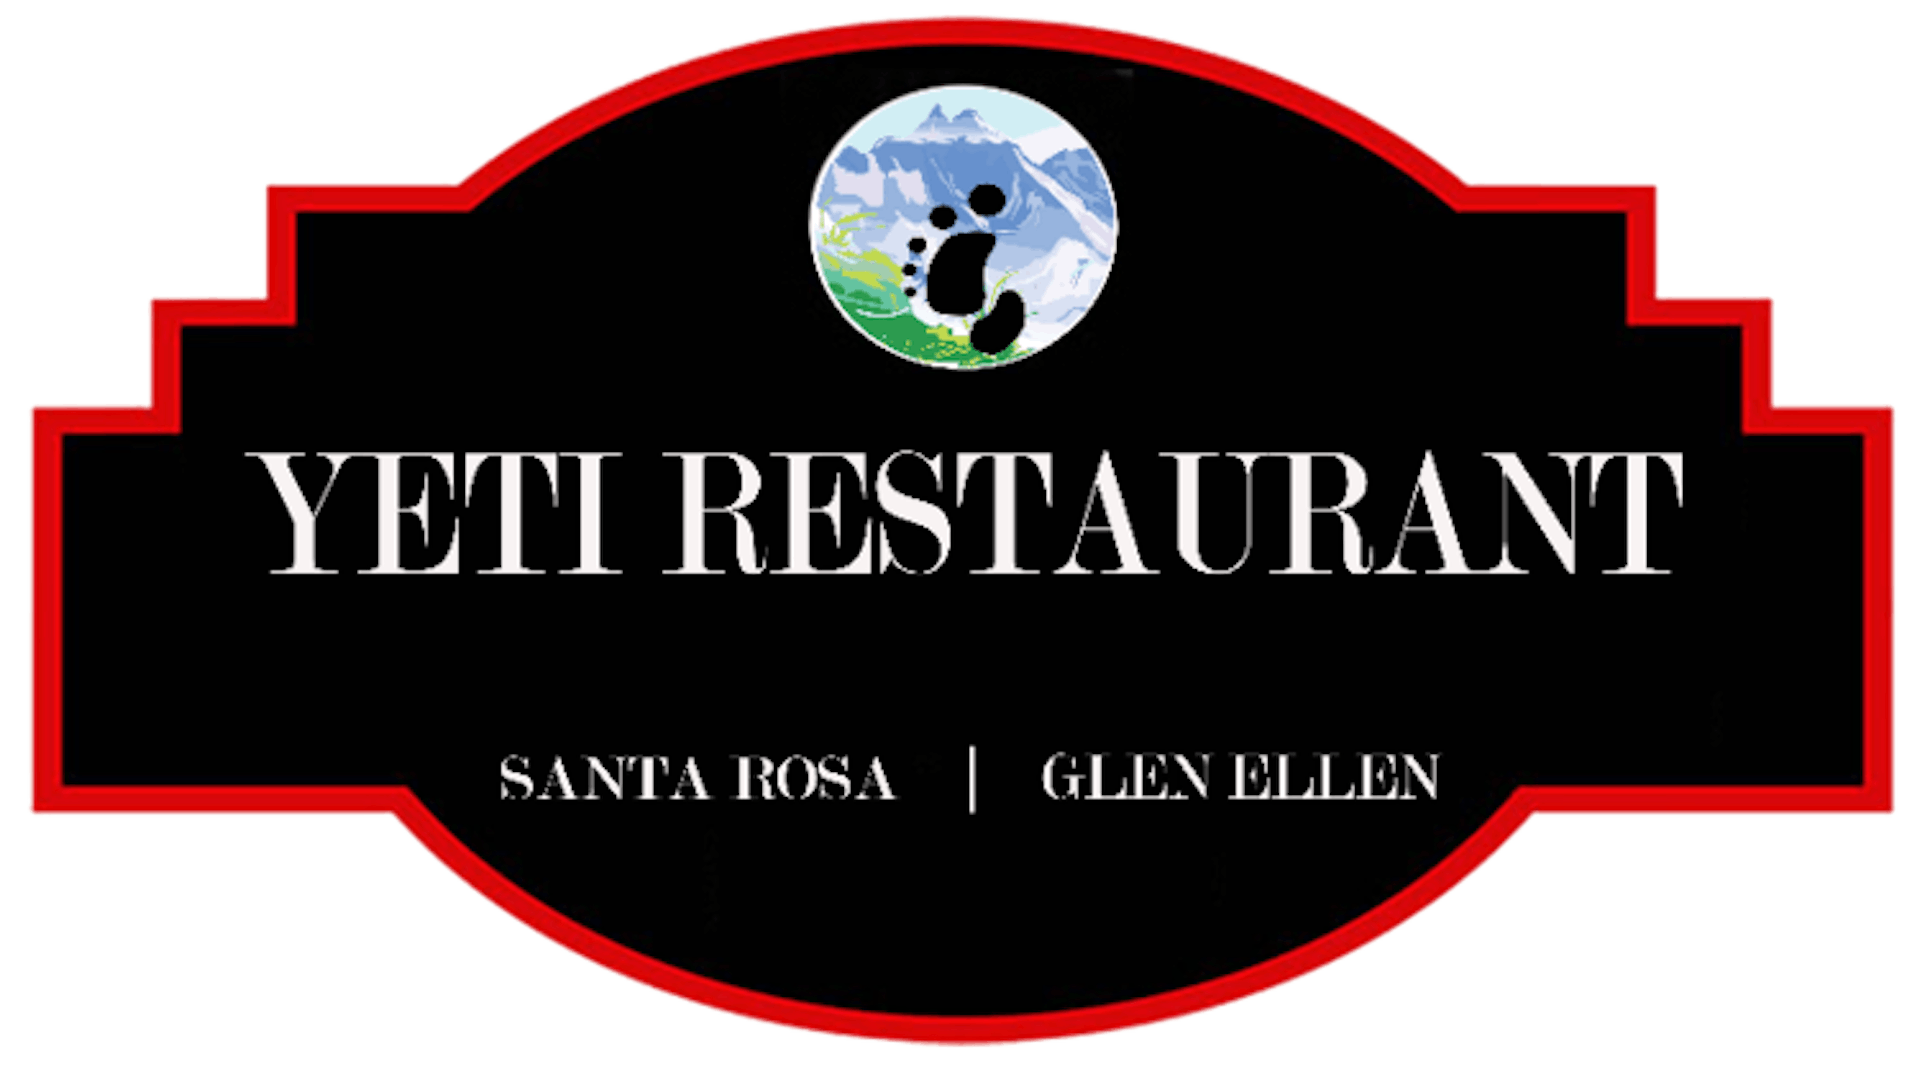 Yeti Restaurant (Santa Rosa)